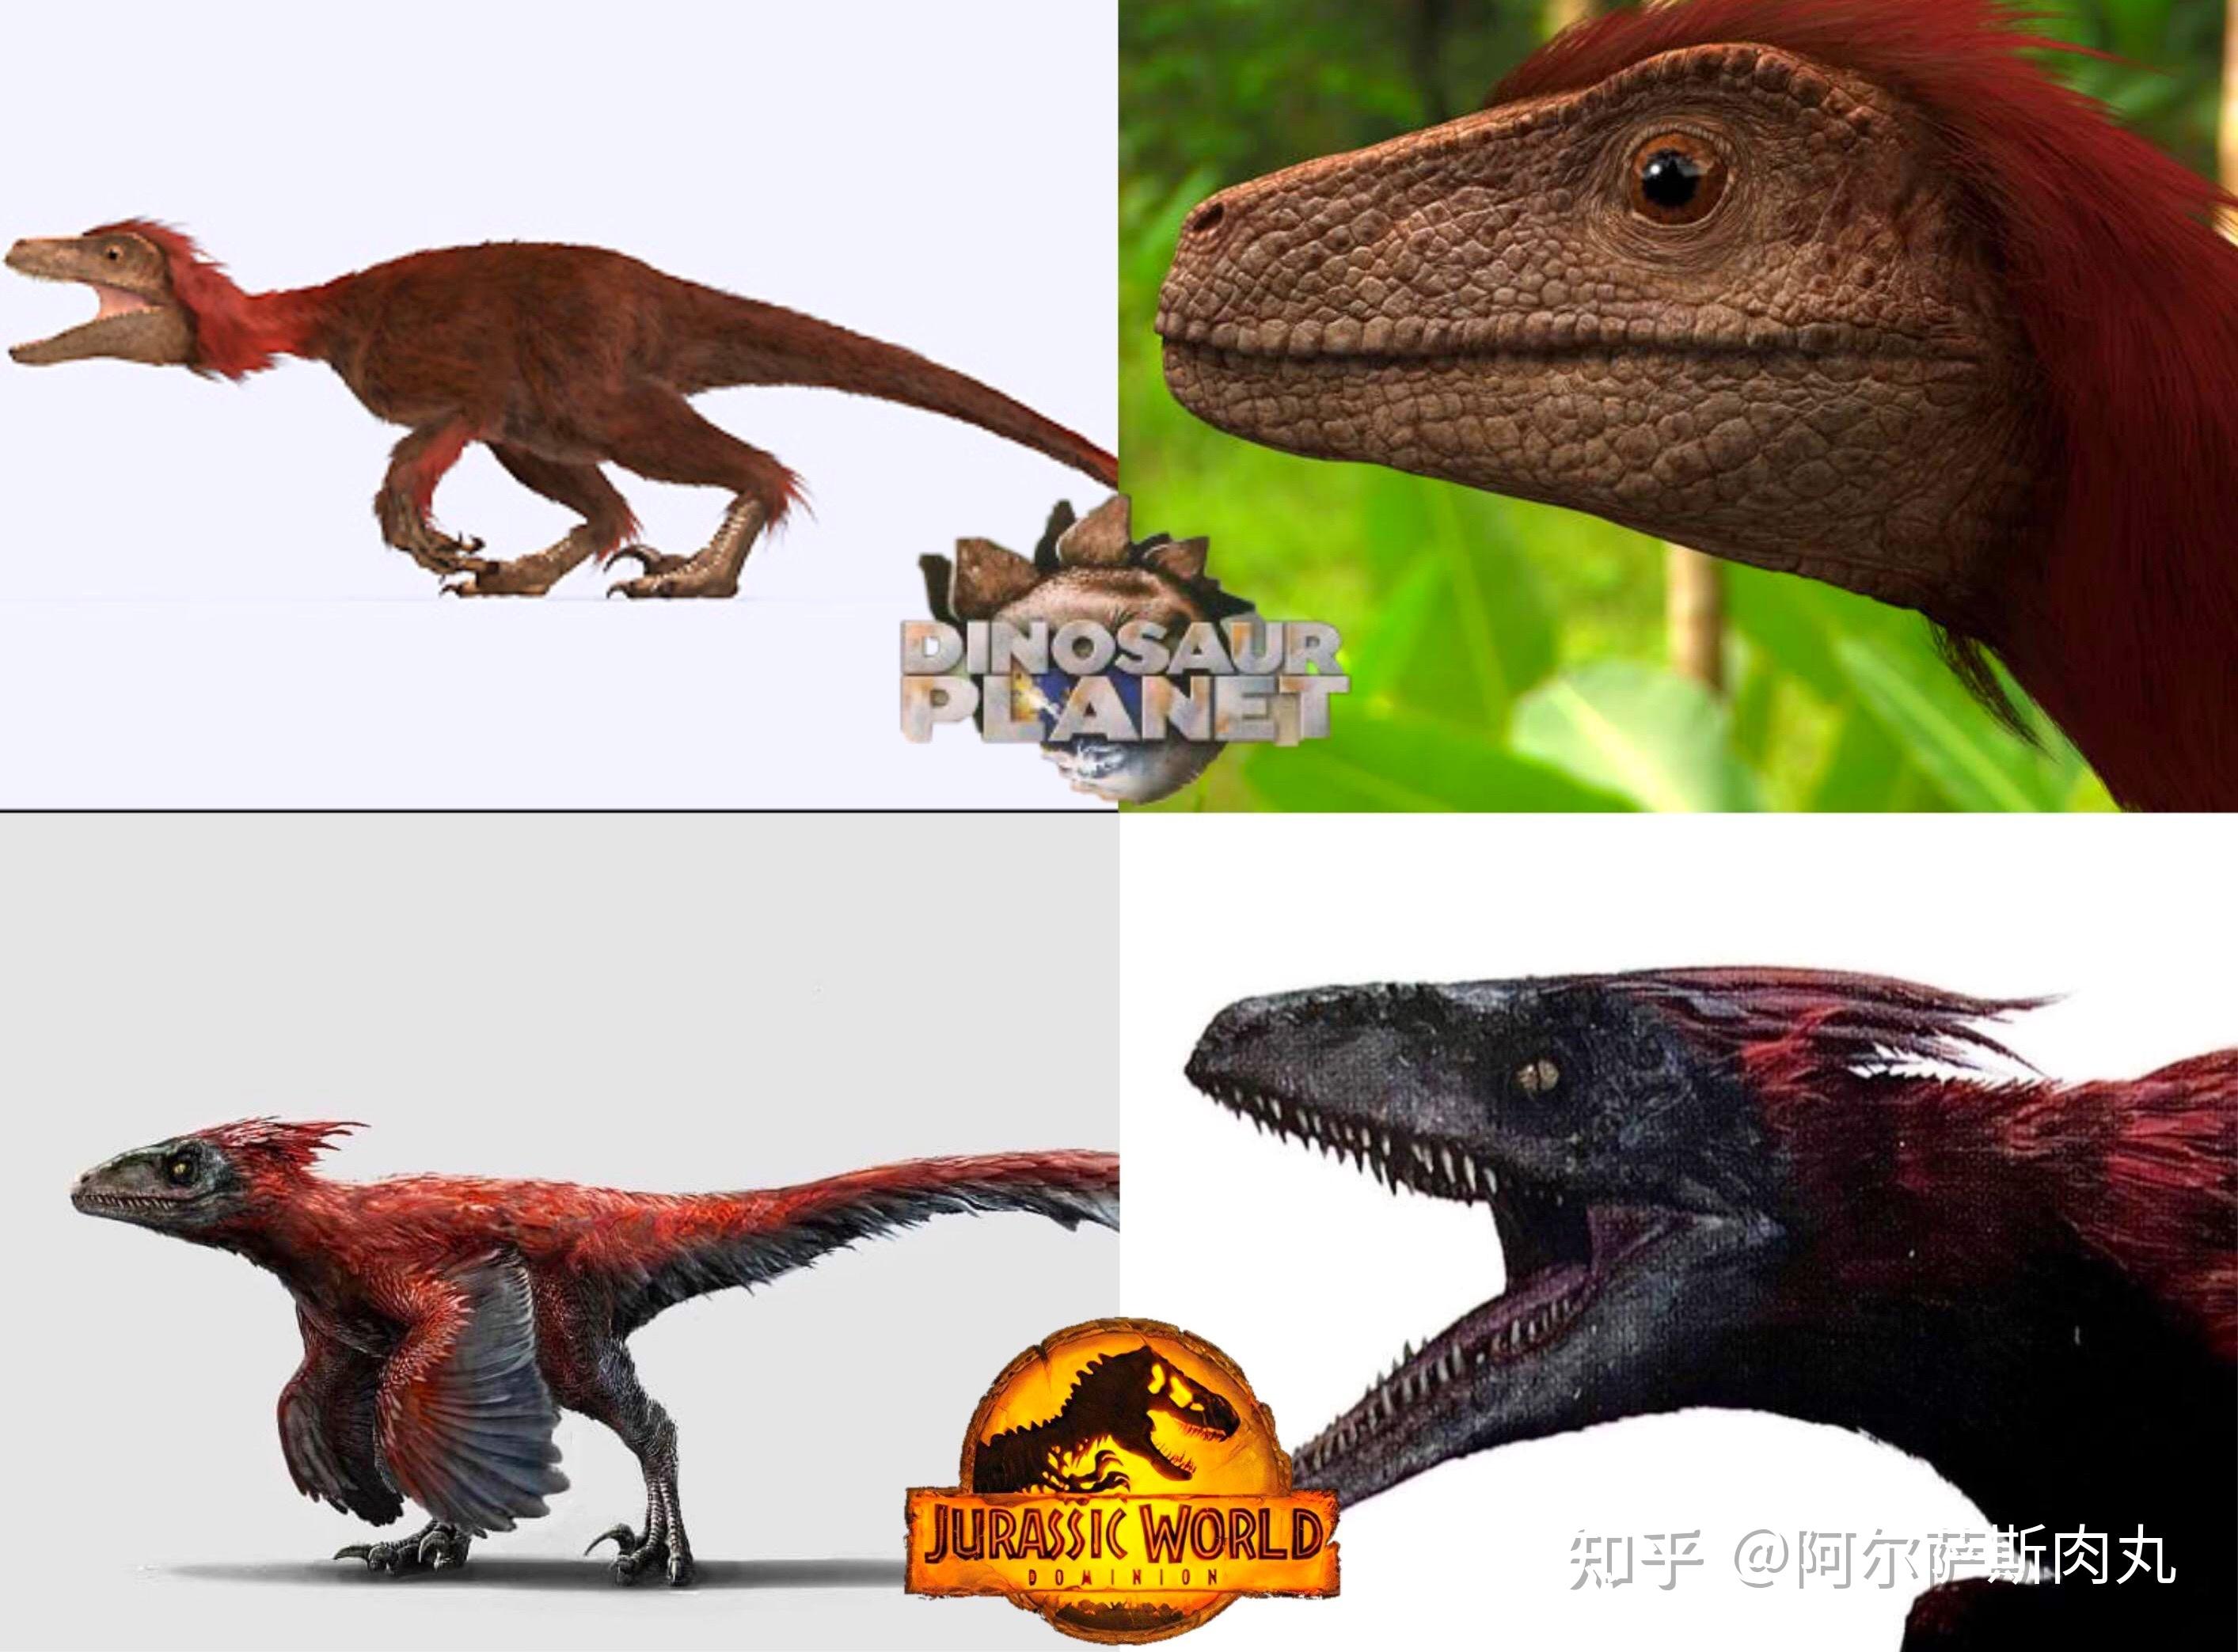 恐龙总目—蜥臀目—兽脚亚目—驰龙科 dromaeosauridae—火盗龙属